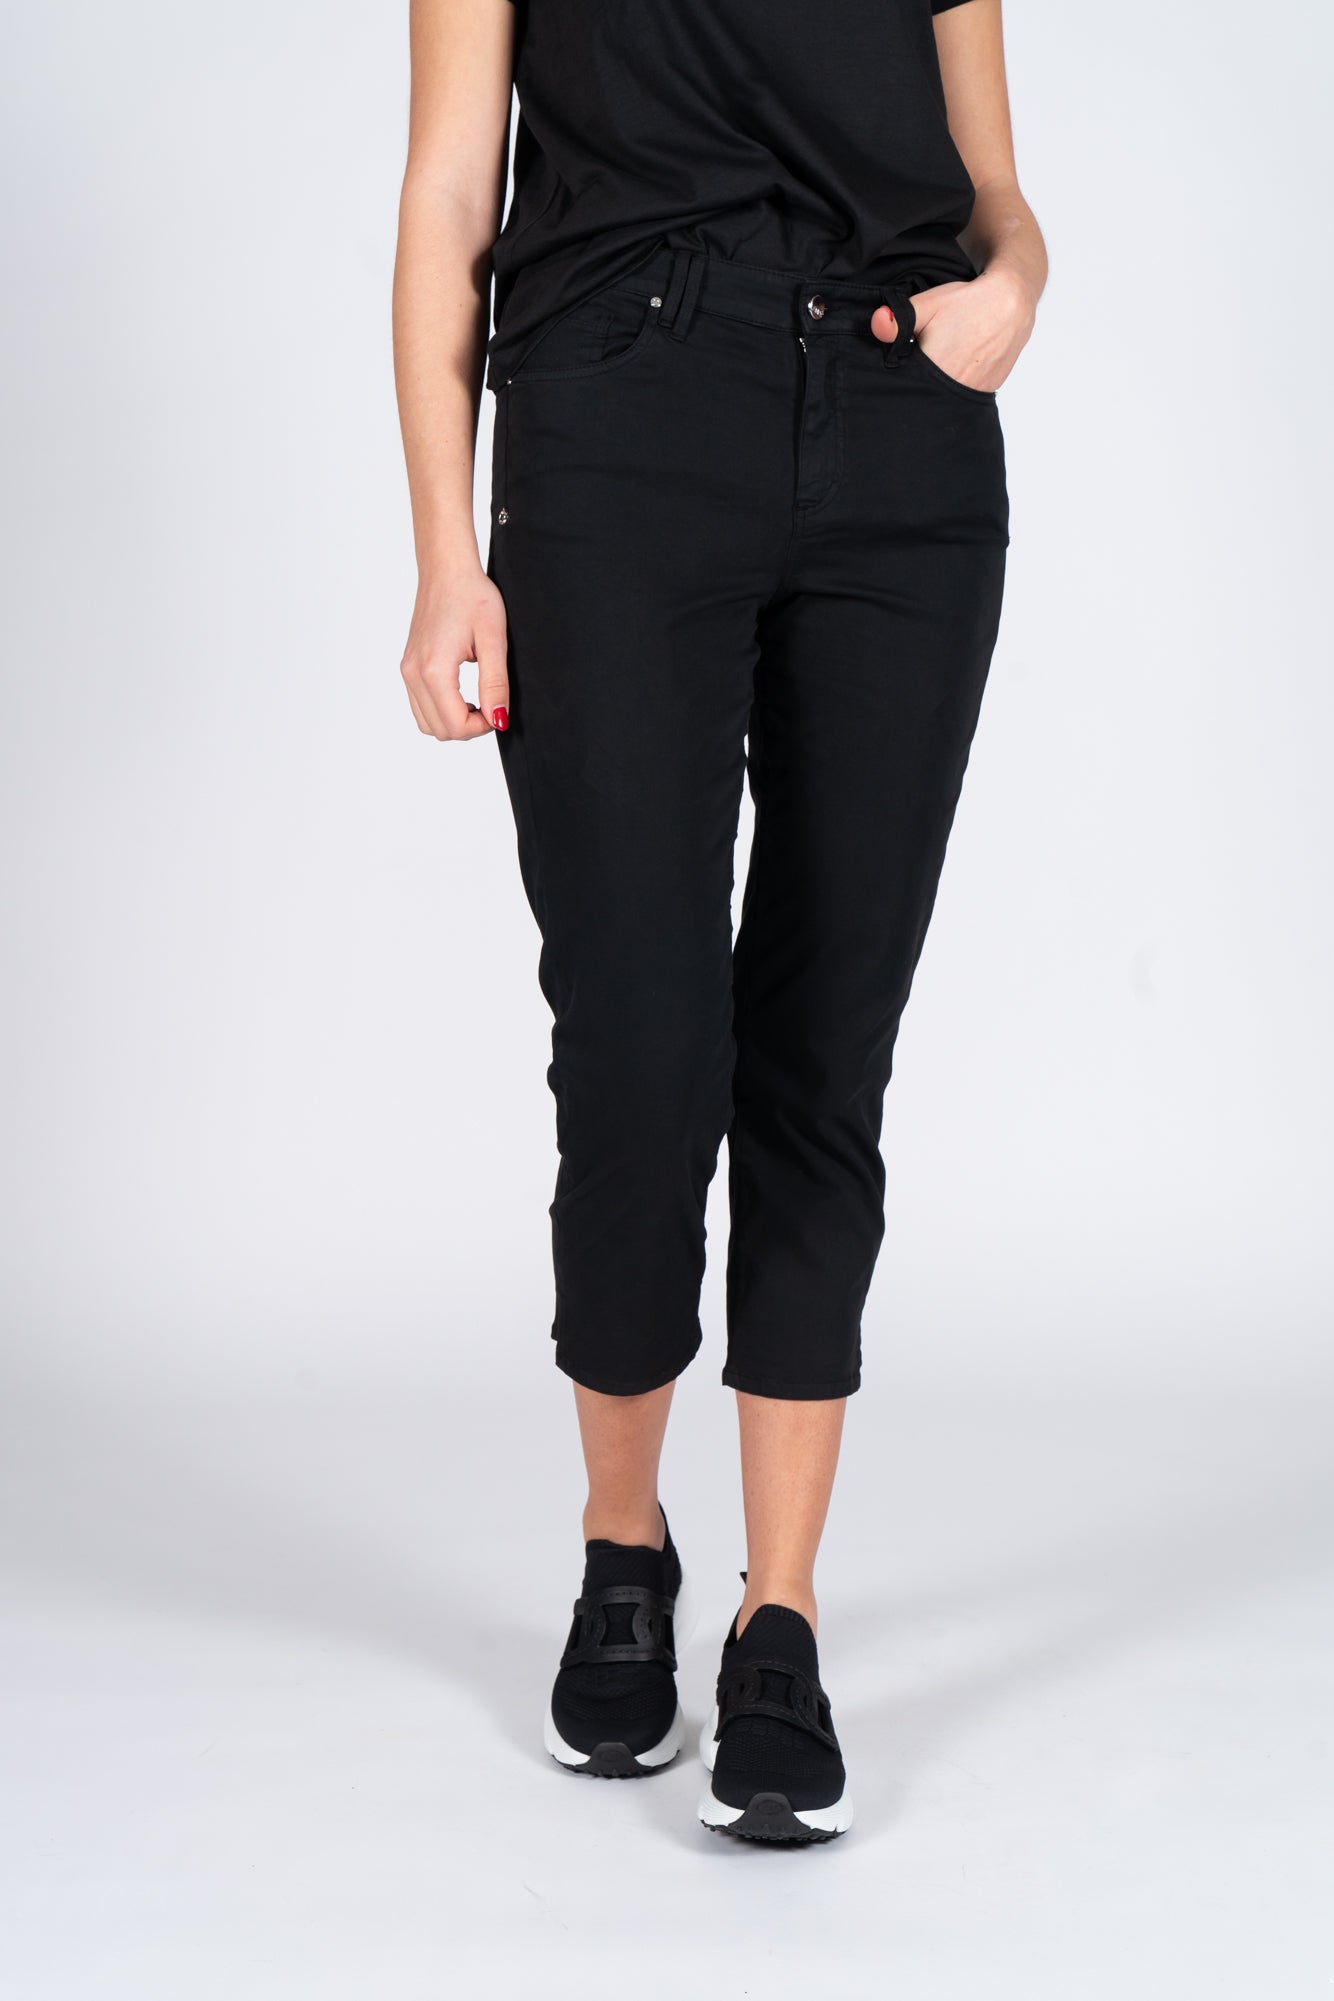 Latino' Jeans Pants Black Woman-1